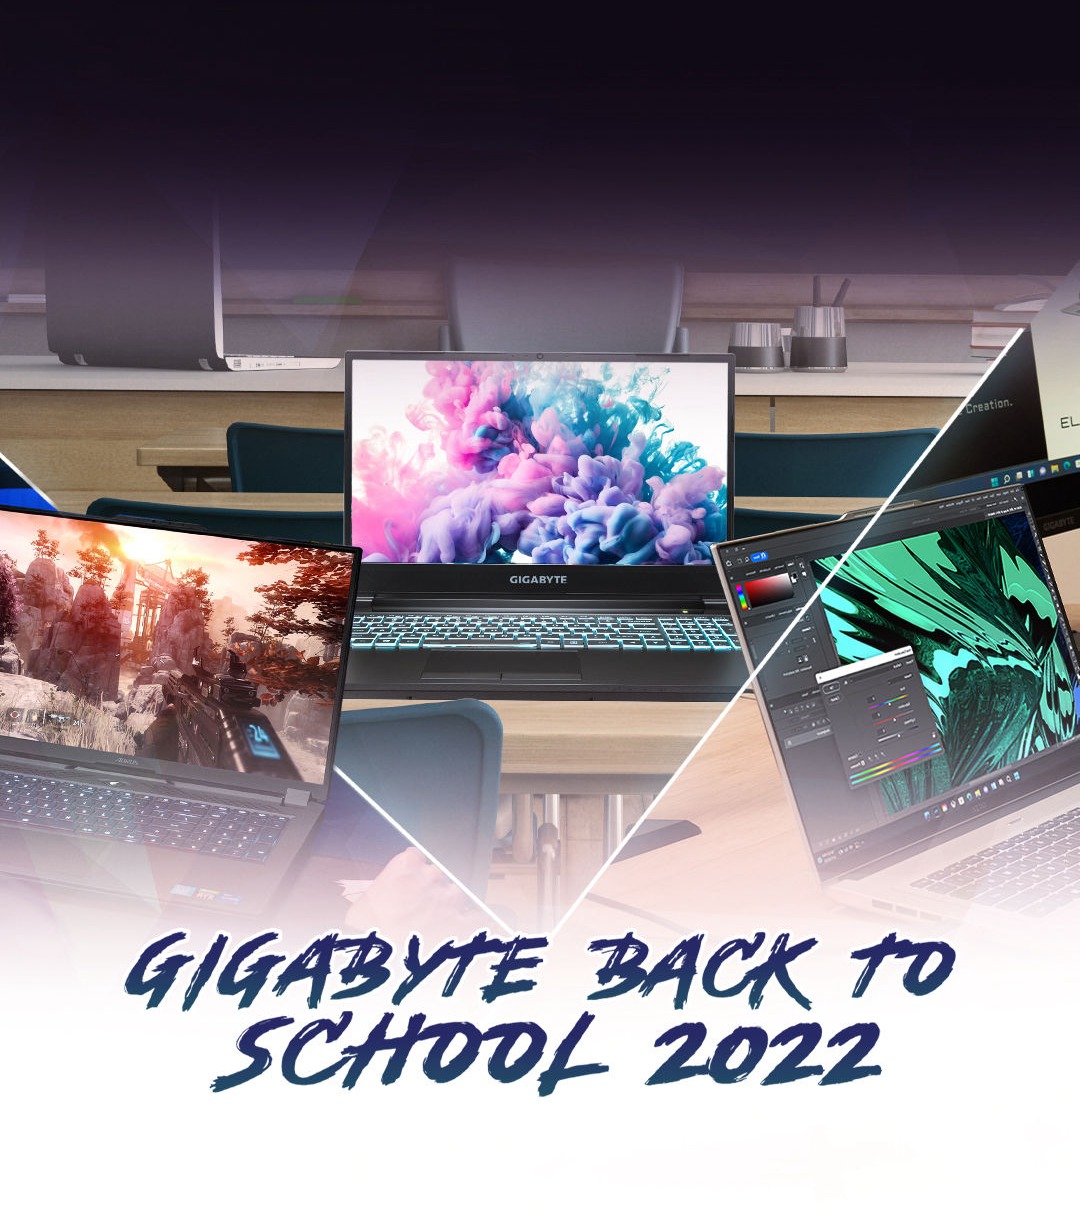 GIGABYTE BACK TO SCHOOL 2022